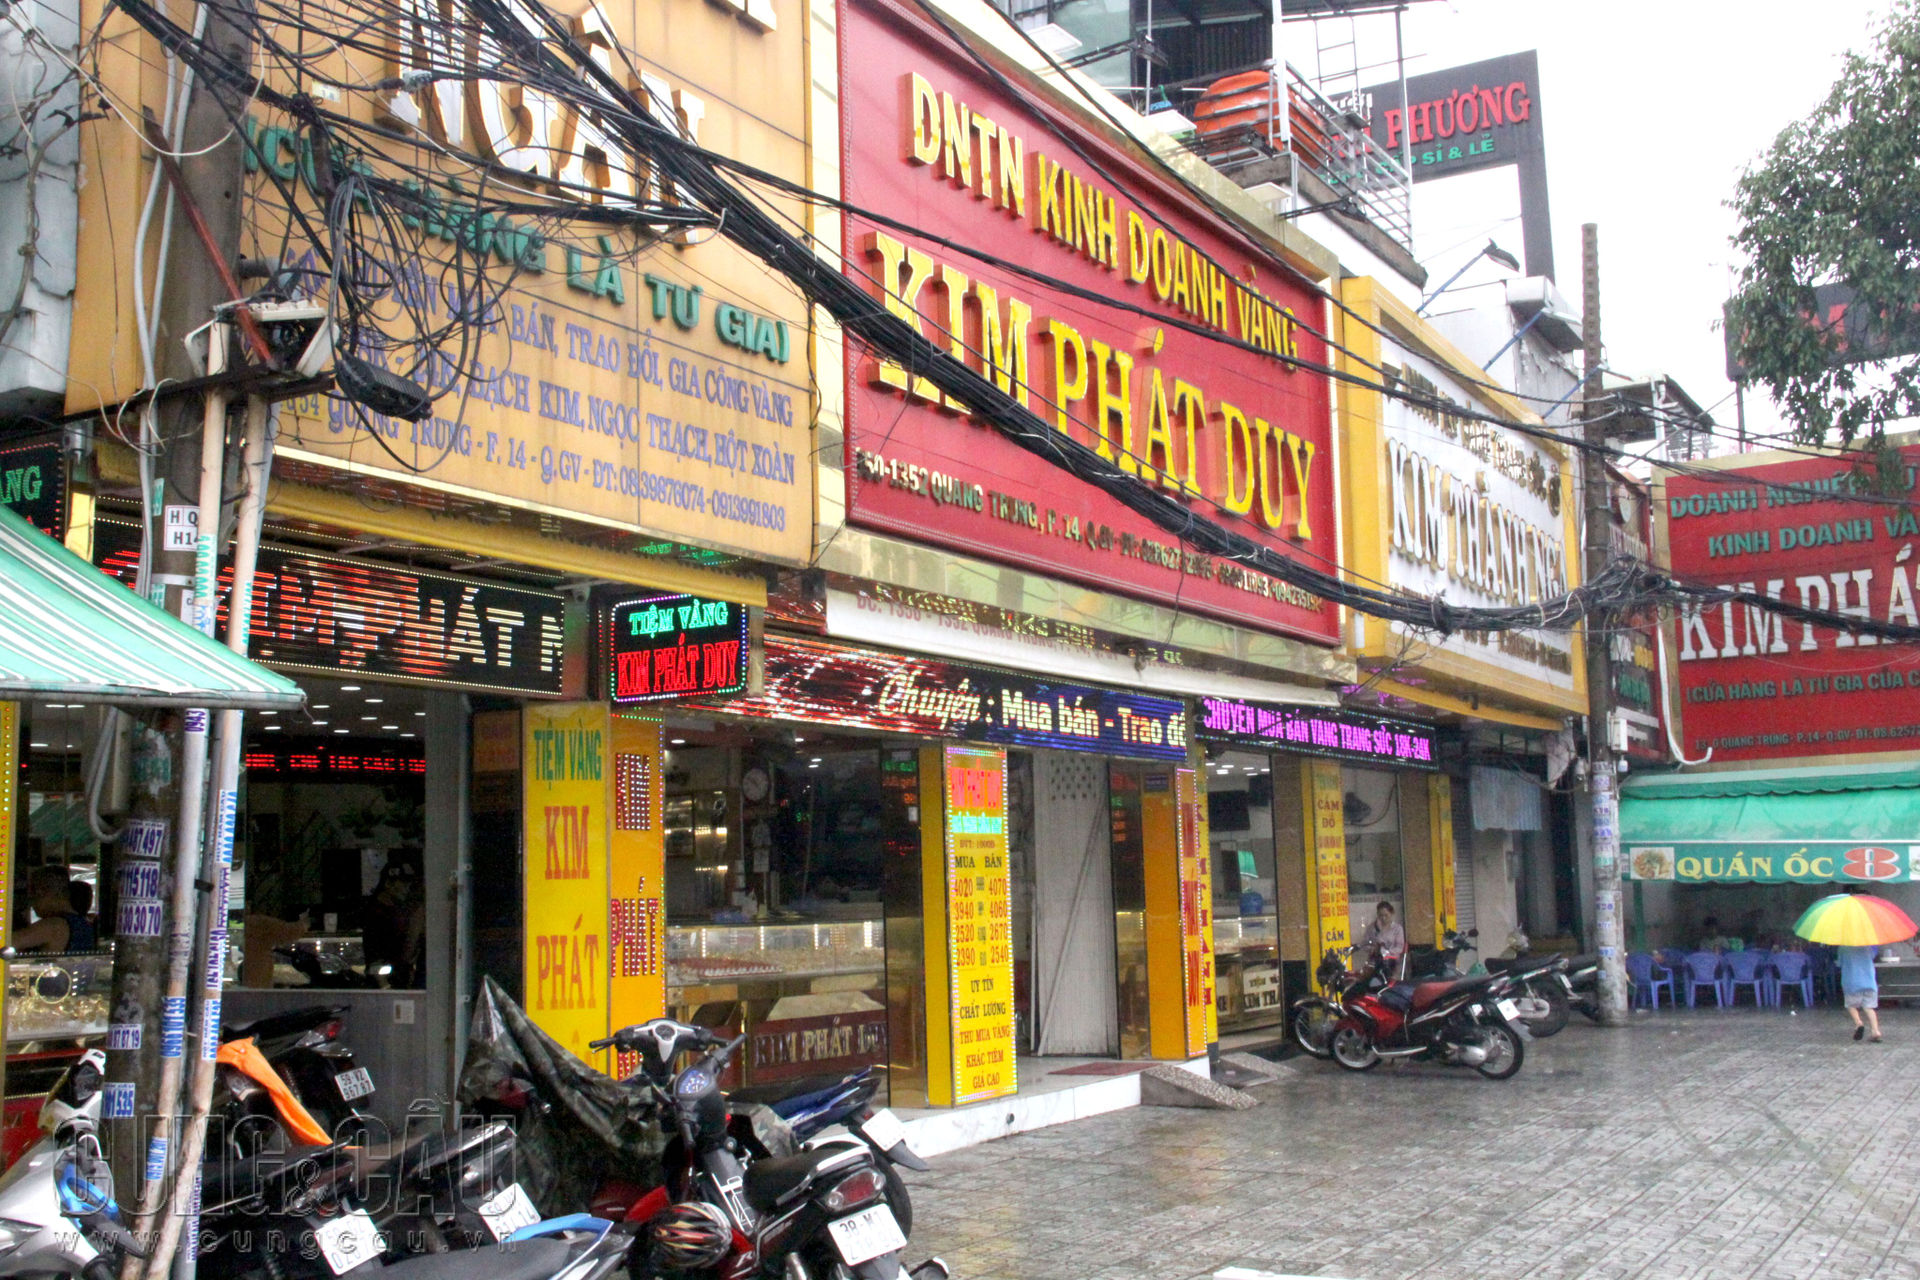   Cửa hàng kinh doanh vàng Kim Phát (tại Gò Vấp), lượng khách chỉ thưa thớt vài người ra vào, khoảng 5-10 người/giờ ra vào nơi đây.                              Cũng tình trạng trên, chỉ lác đác vài người ra vào tiệm vàng tại quận 3 và quận 10                